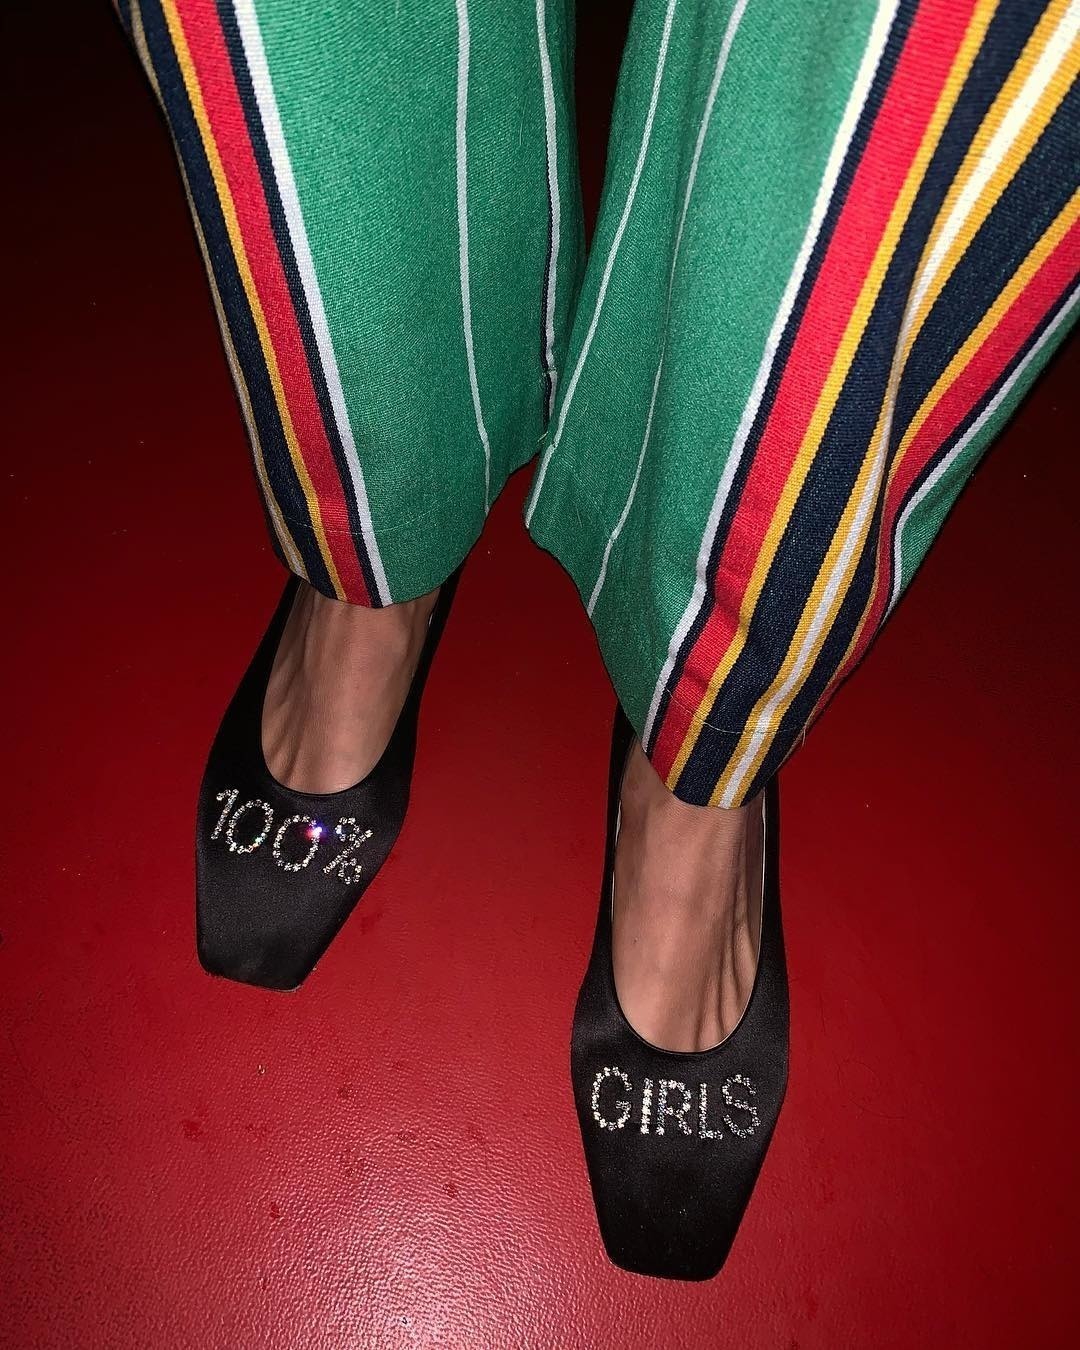 Kendall Jenner'dan Elsa Hosk'a Yılın Işıltılı Moda Instagramları